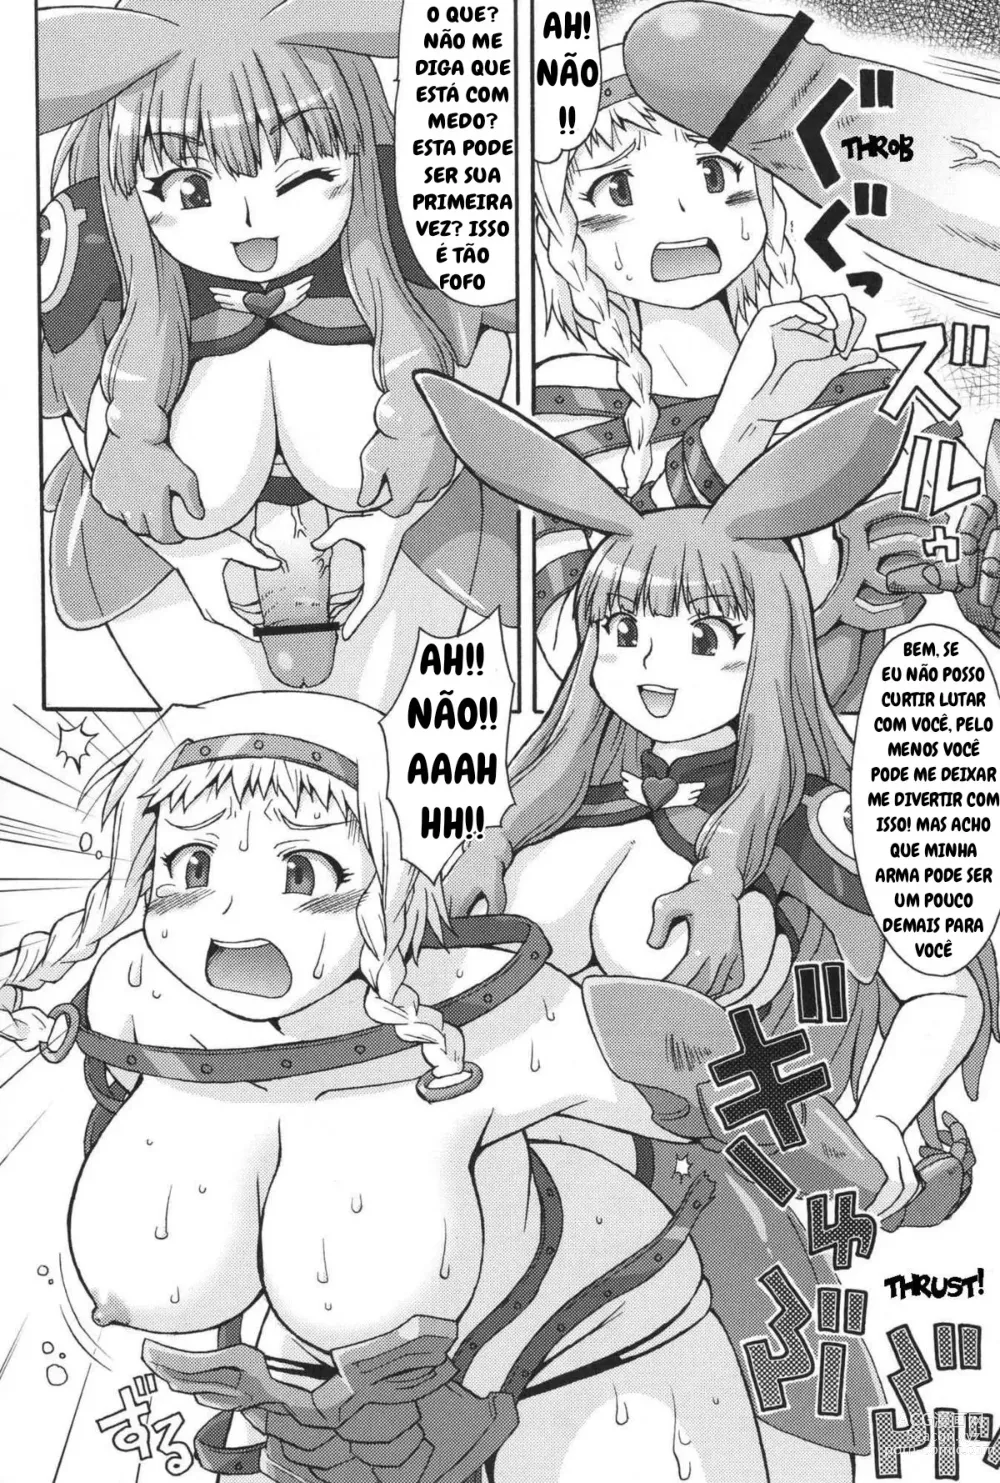 Page 3 of doujinshi Mero Rin Queen